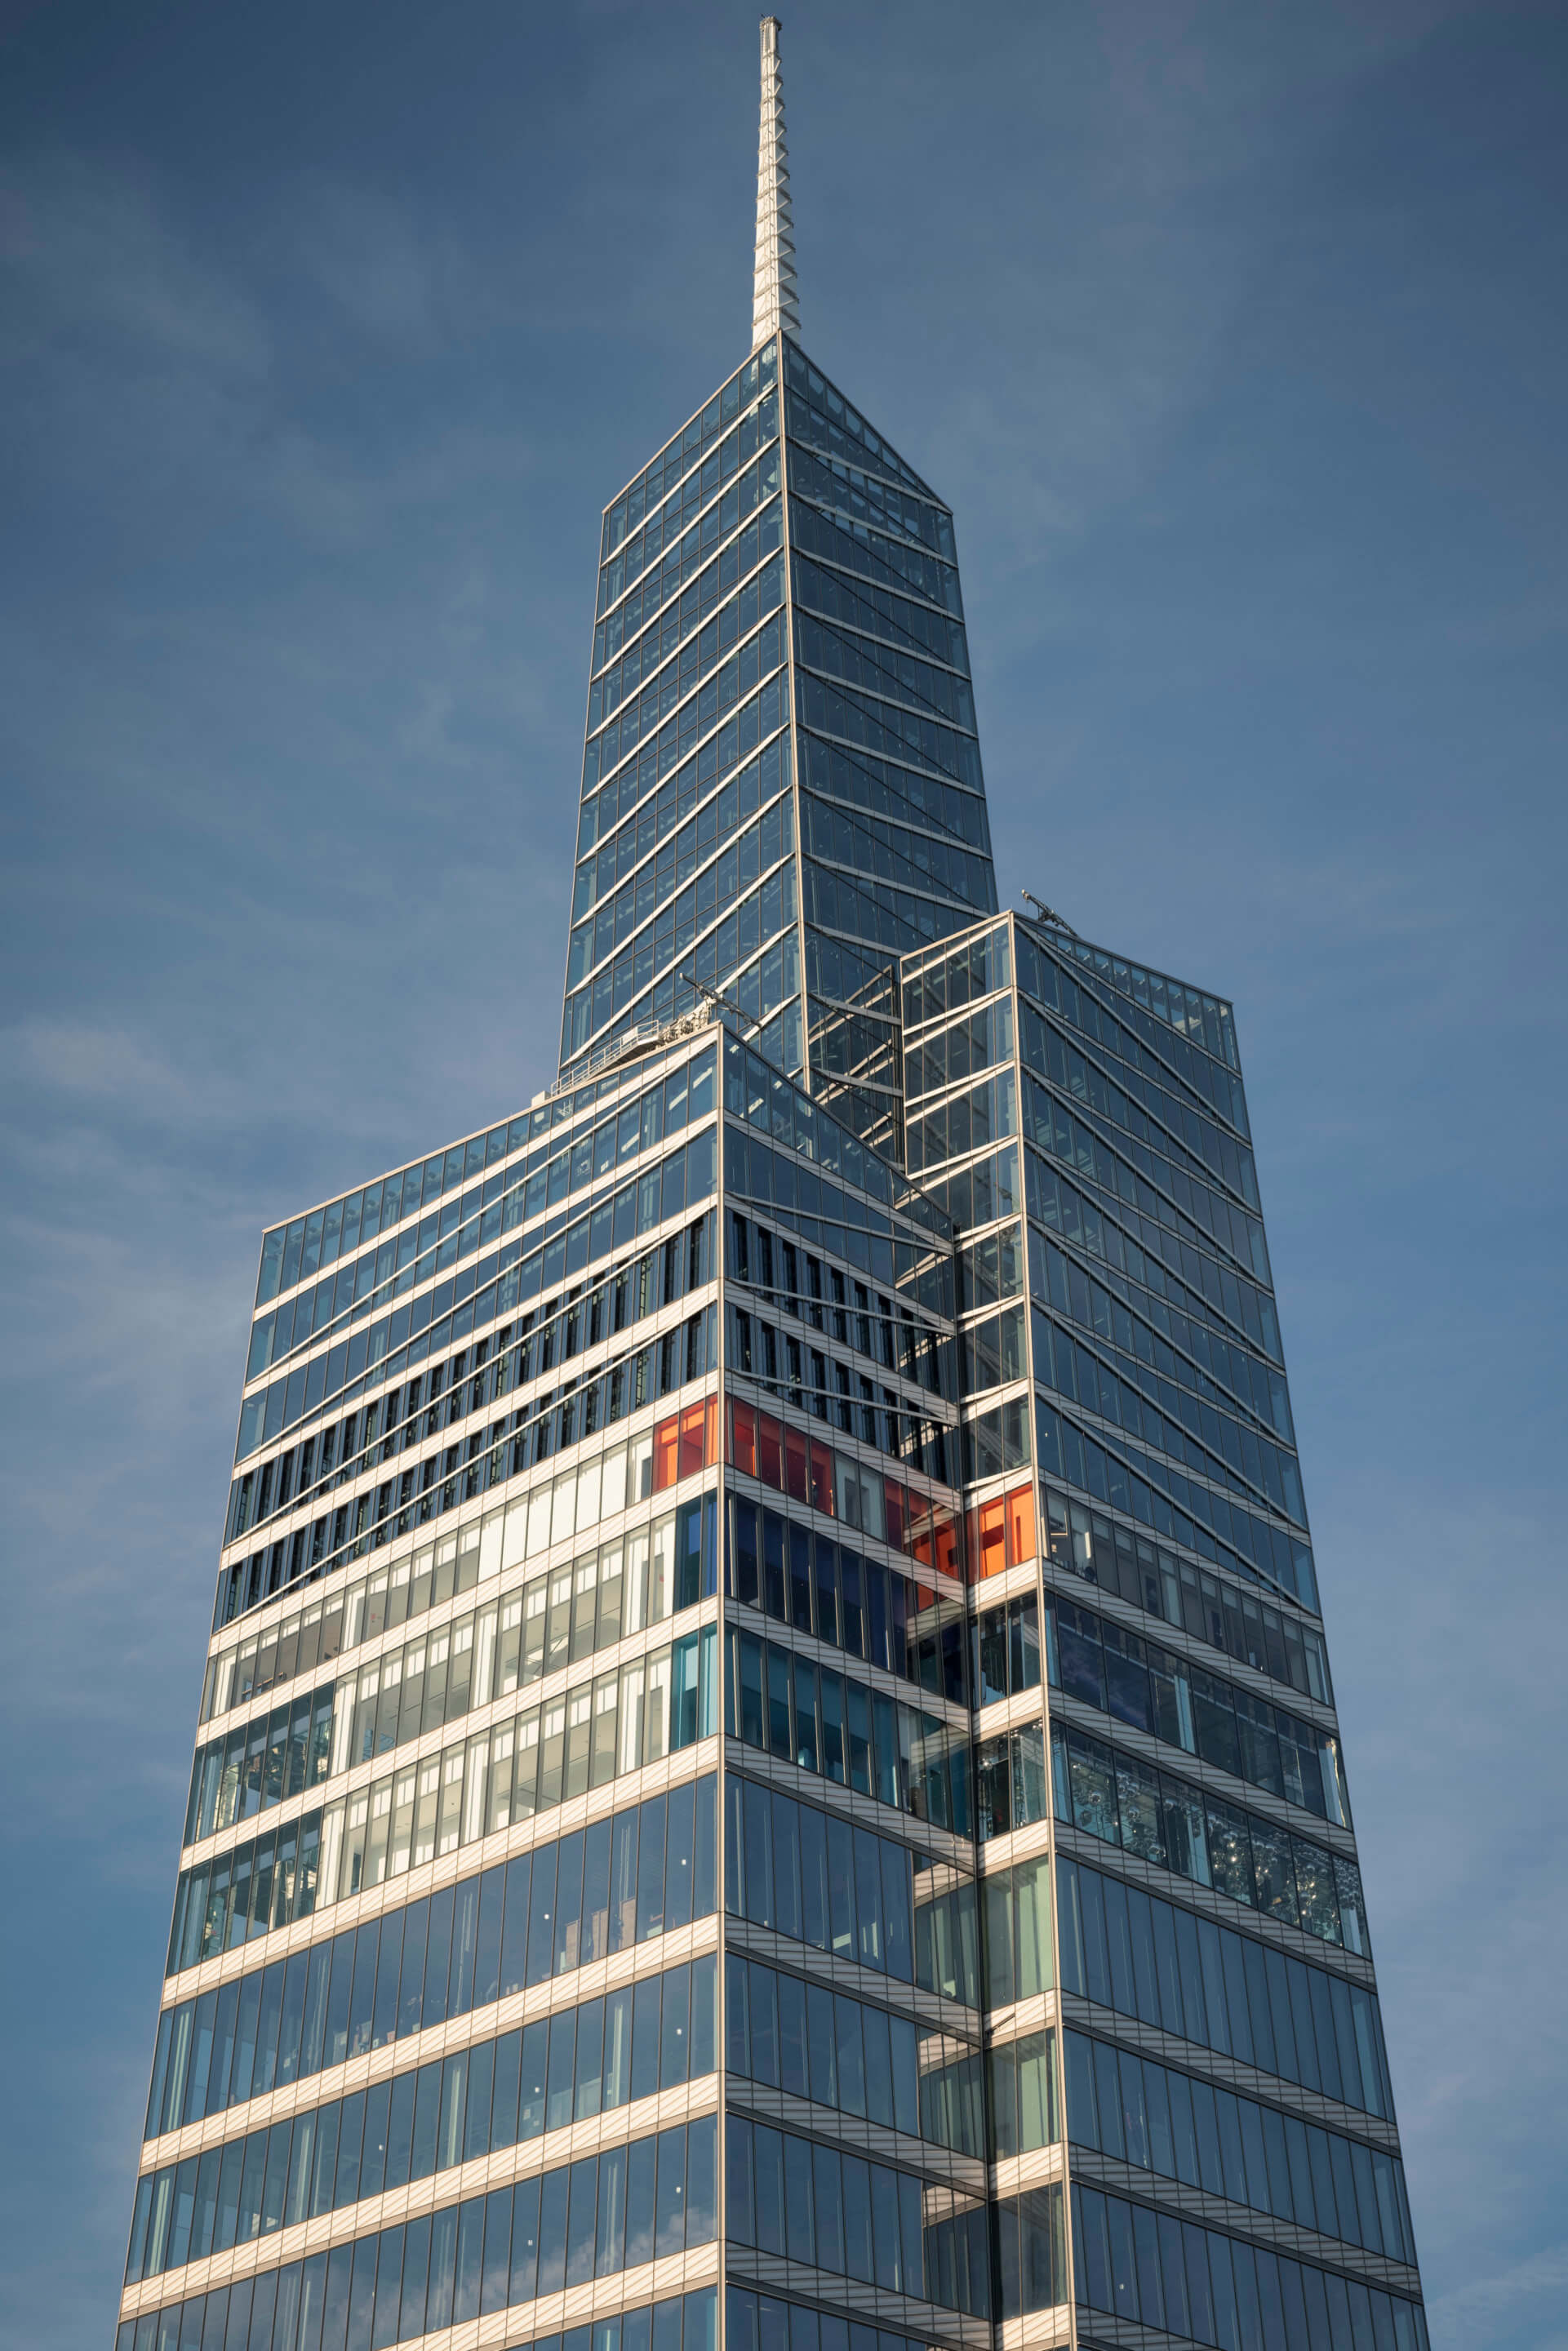 exterior of a glass manhattan skyscraper